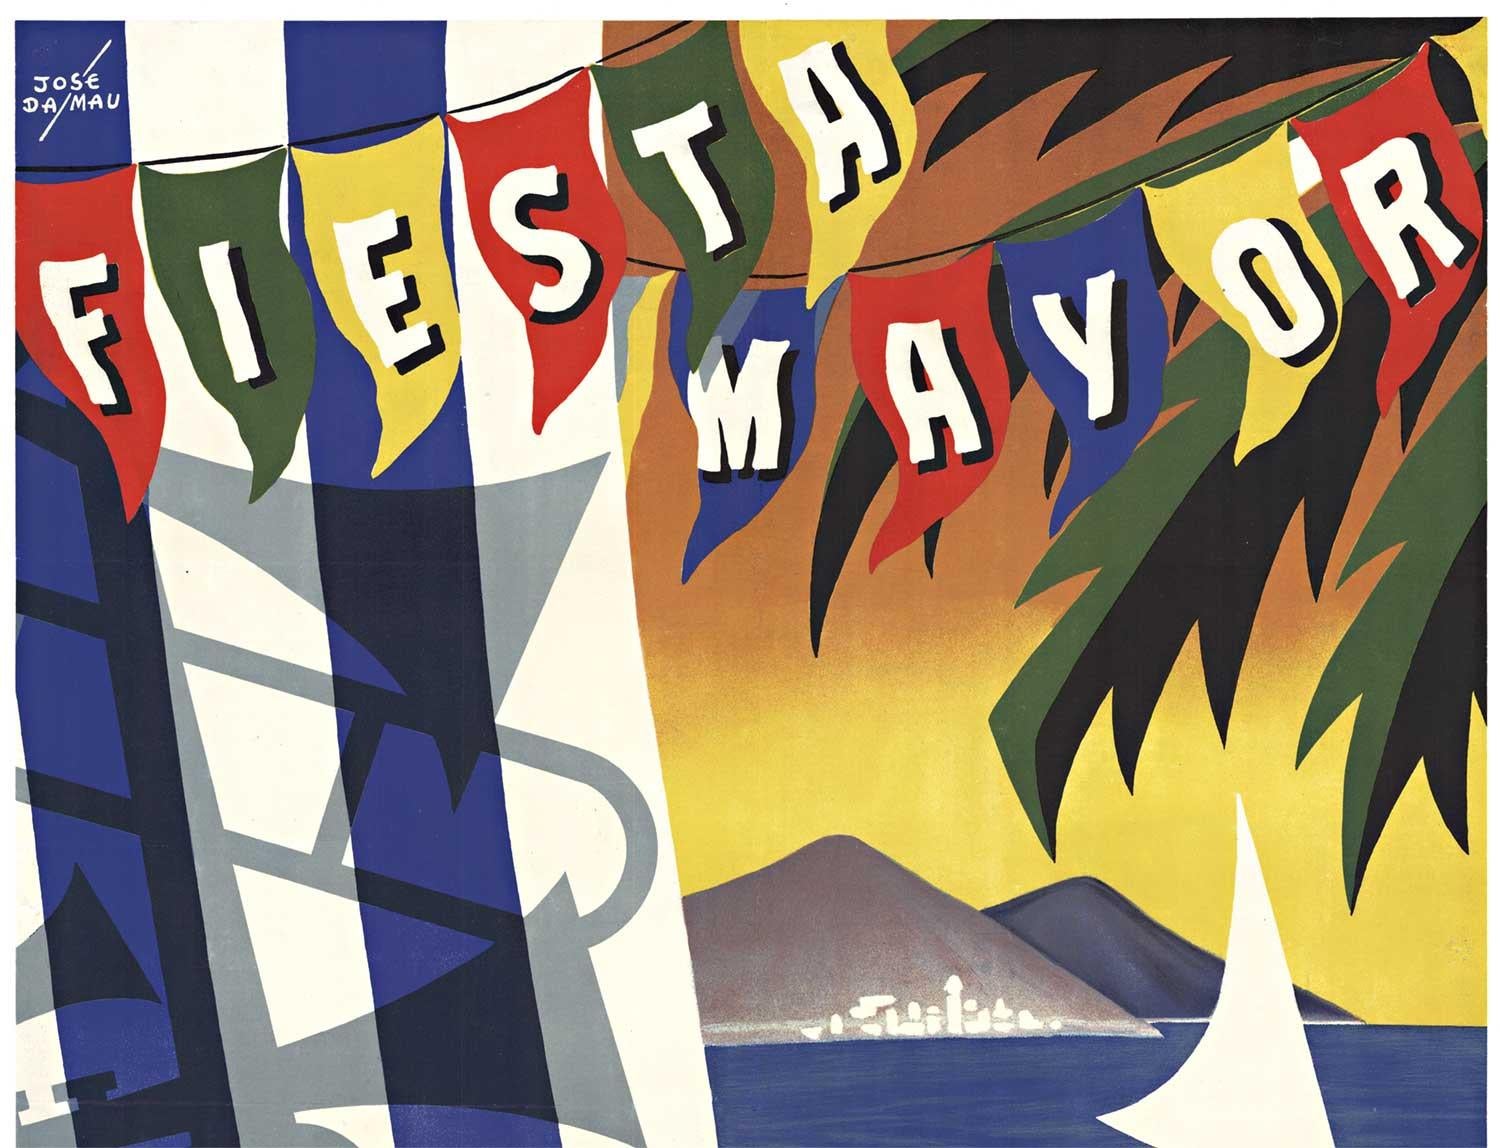 Originales spanisches Vintage-festivalplakat „Fiesta Mayor Badalona“  1955 – Print von Jose Dalmau